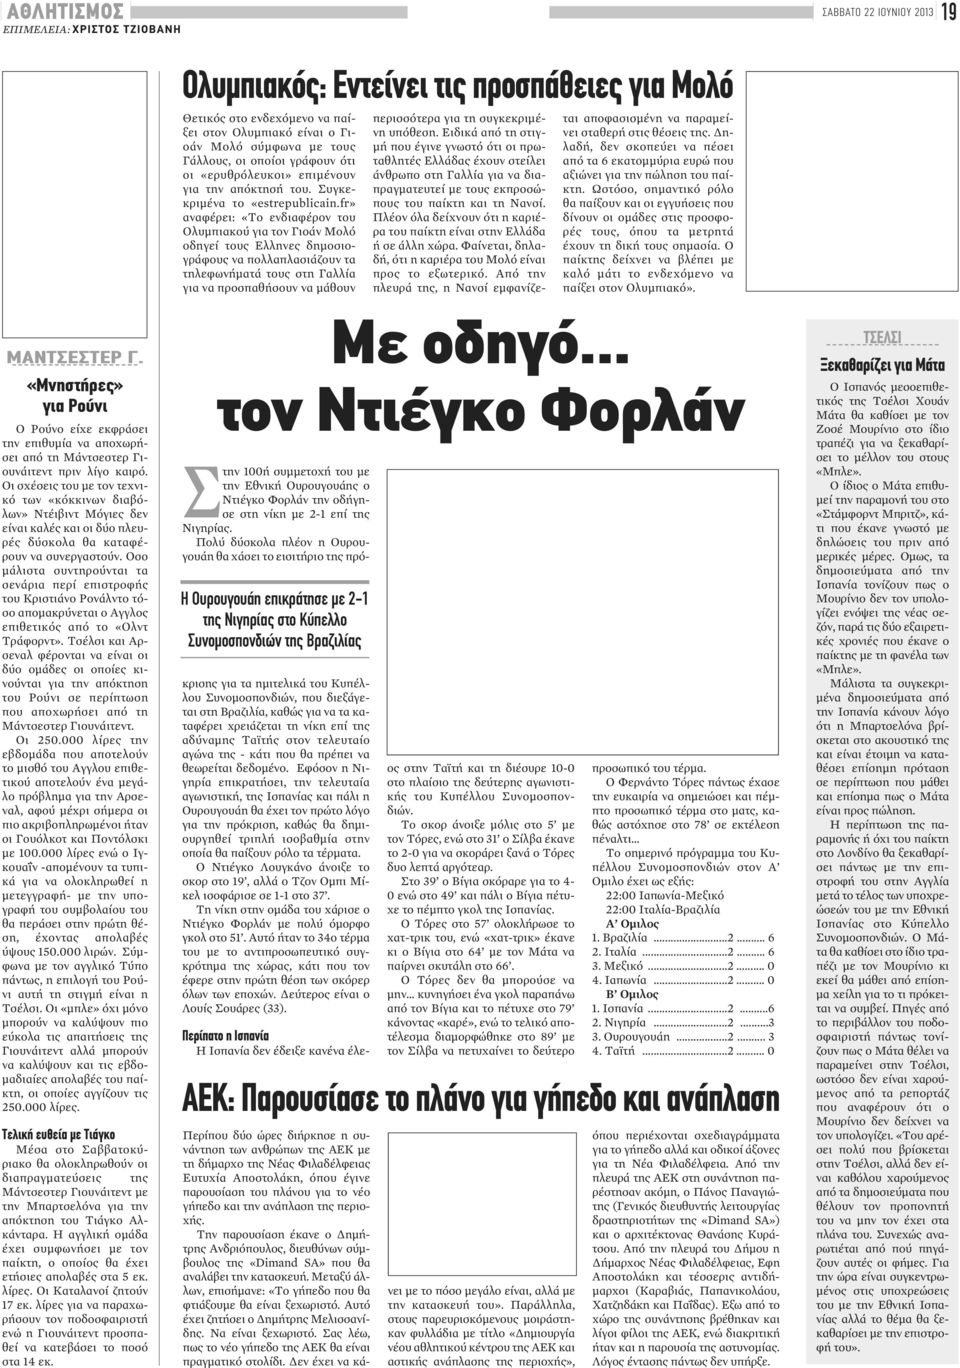 fr» αναφέρει: «Το ενδιαφέρον του Ολυμπιακού για τον Γιοάν Μολό οδηγεί τους Ελληνες δημοσιογράφους να πολλαπλασιάζουν τα τηλεφωνήματά τους στη Γαλλία για να προσπαθήσουν να μάθουν περισσότερα για τη